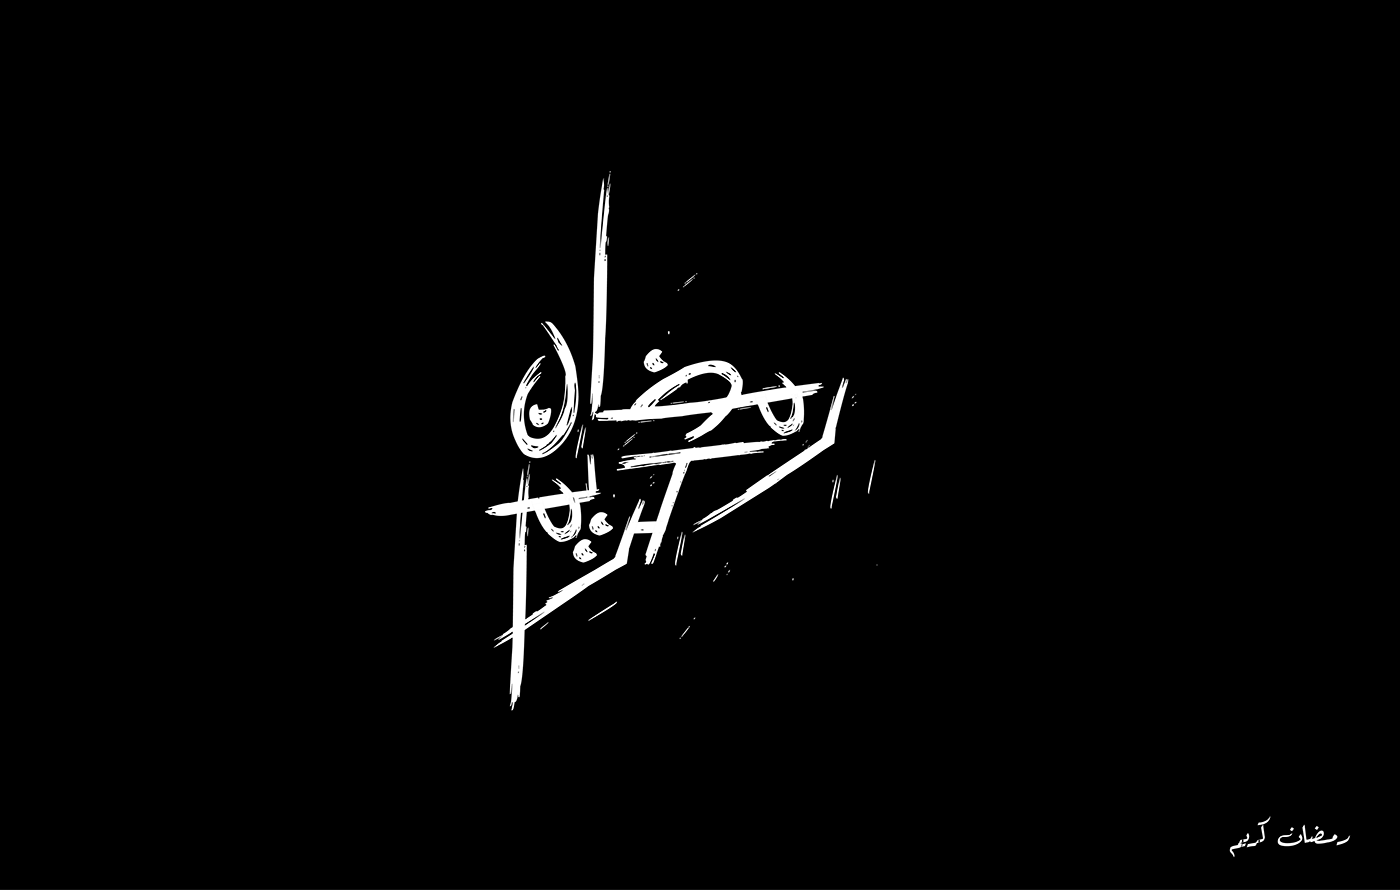 typo typography   typography design Calligraphy   calligraphy arabic Arabic Calligraphy art art de design